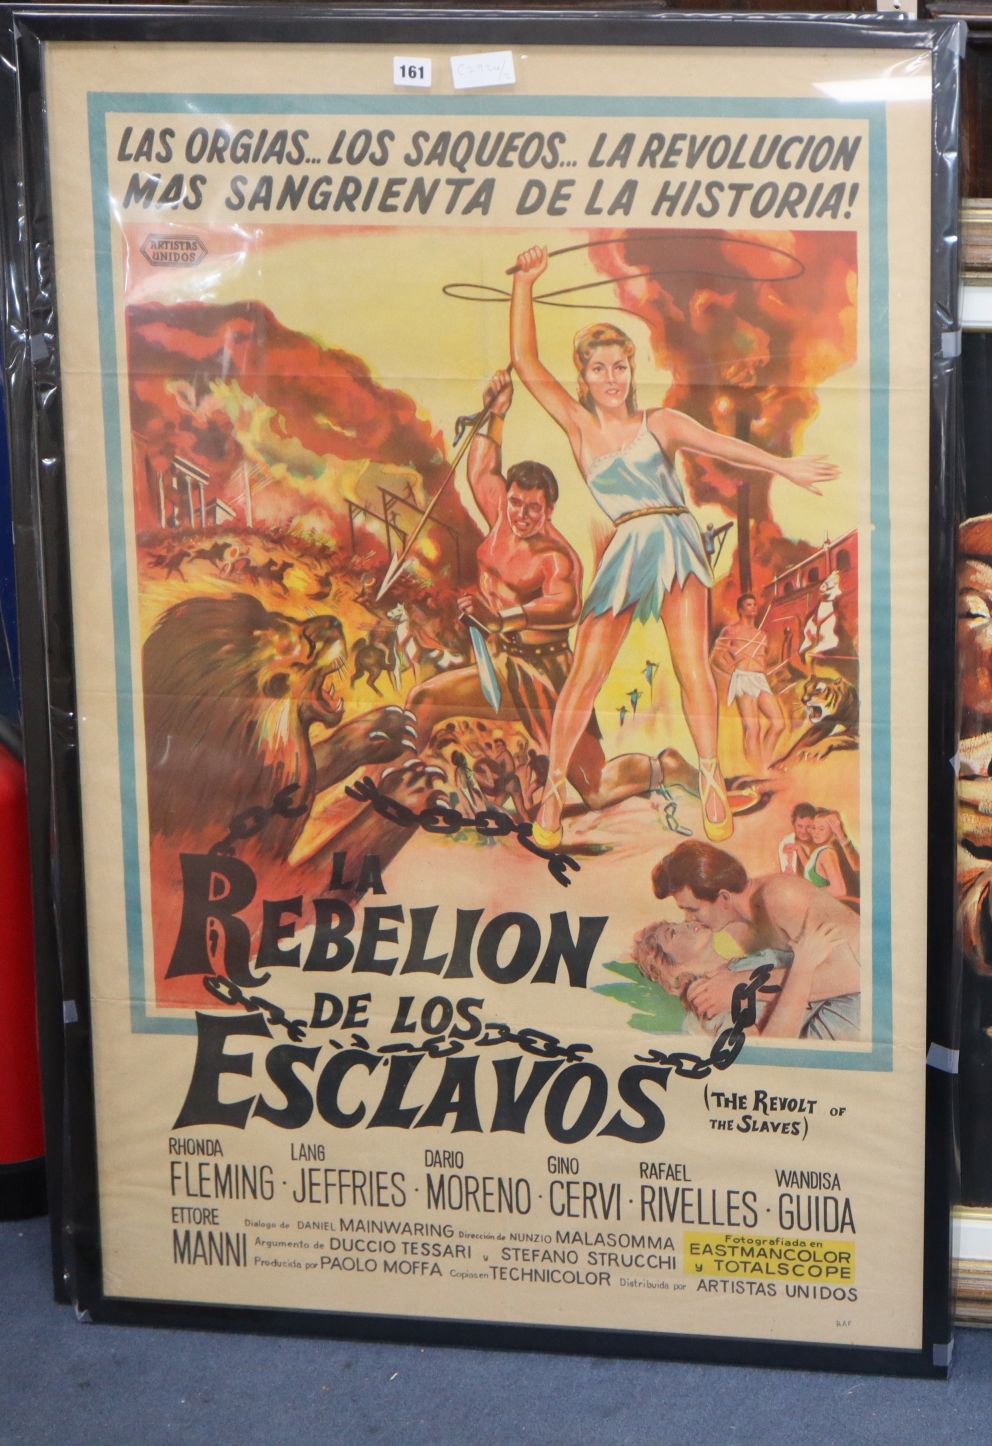 An original one sheet film poster "La Rebellion de Lus Esclavos" - The Revolt of the Slaves